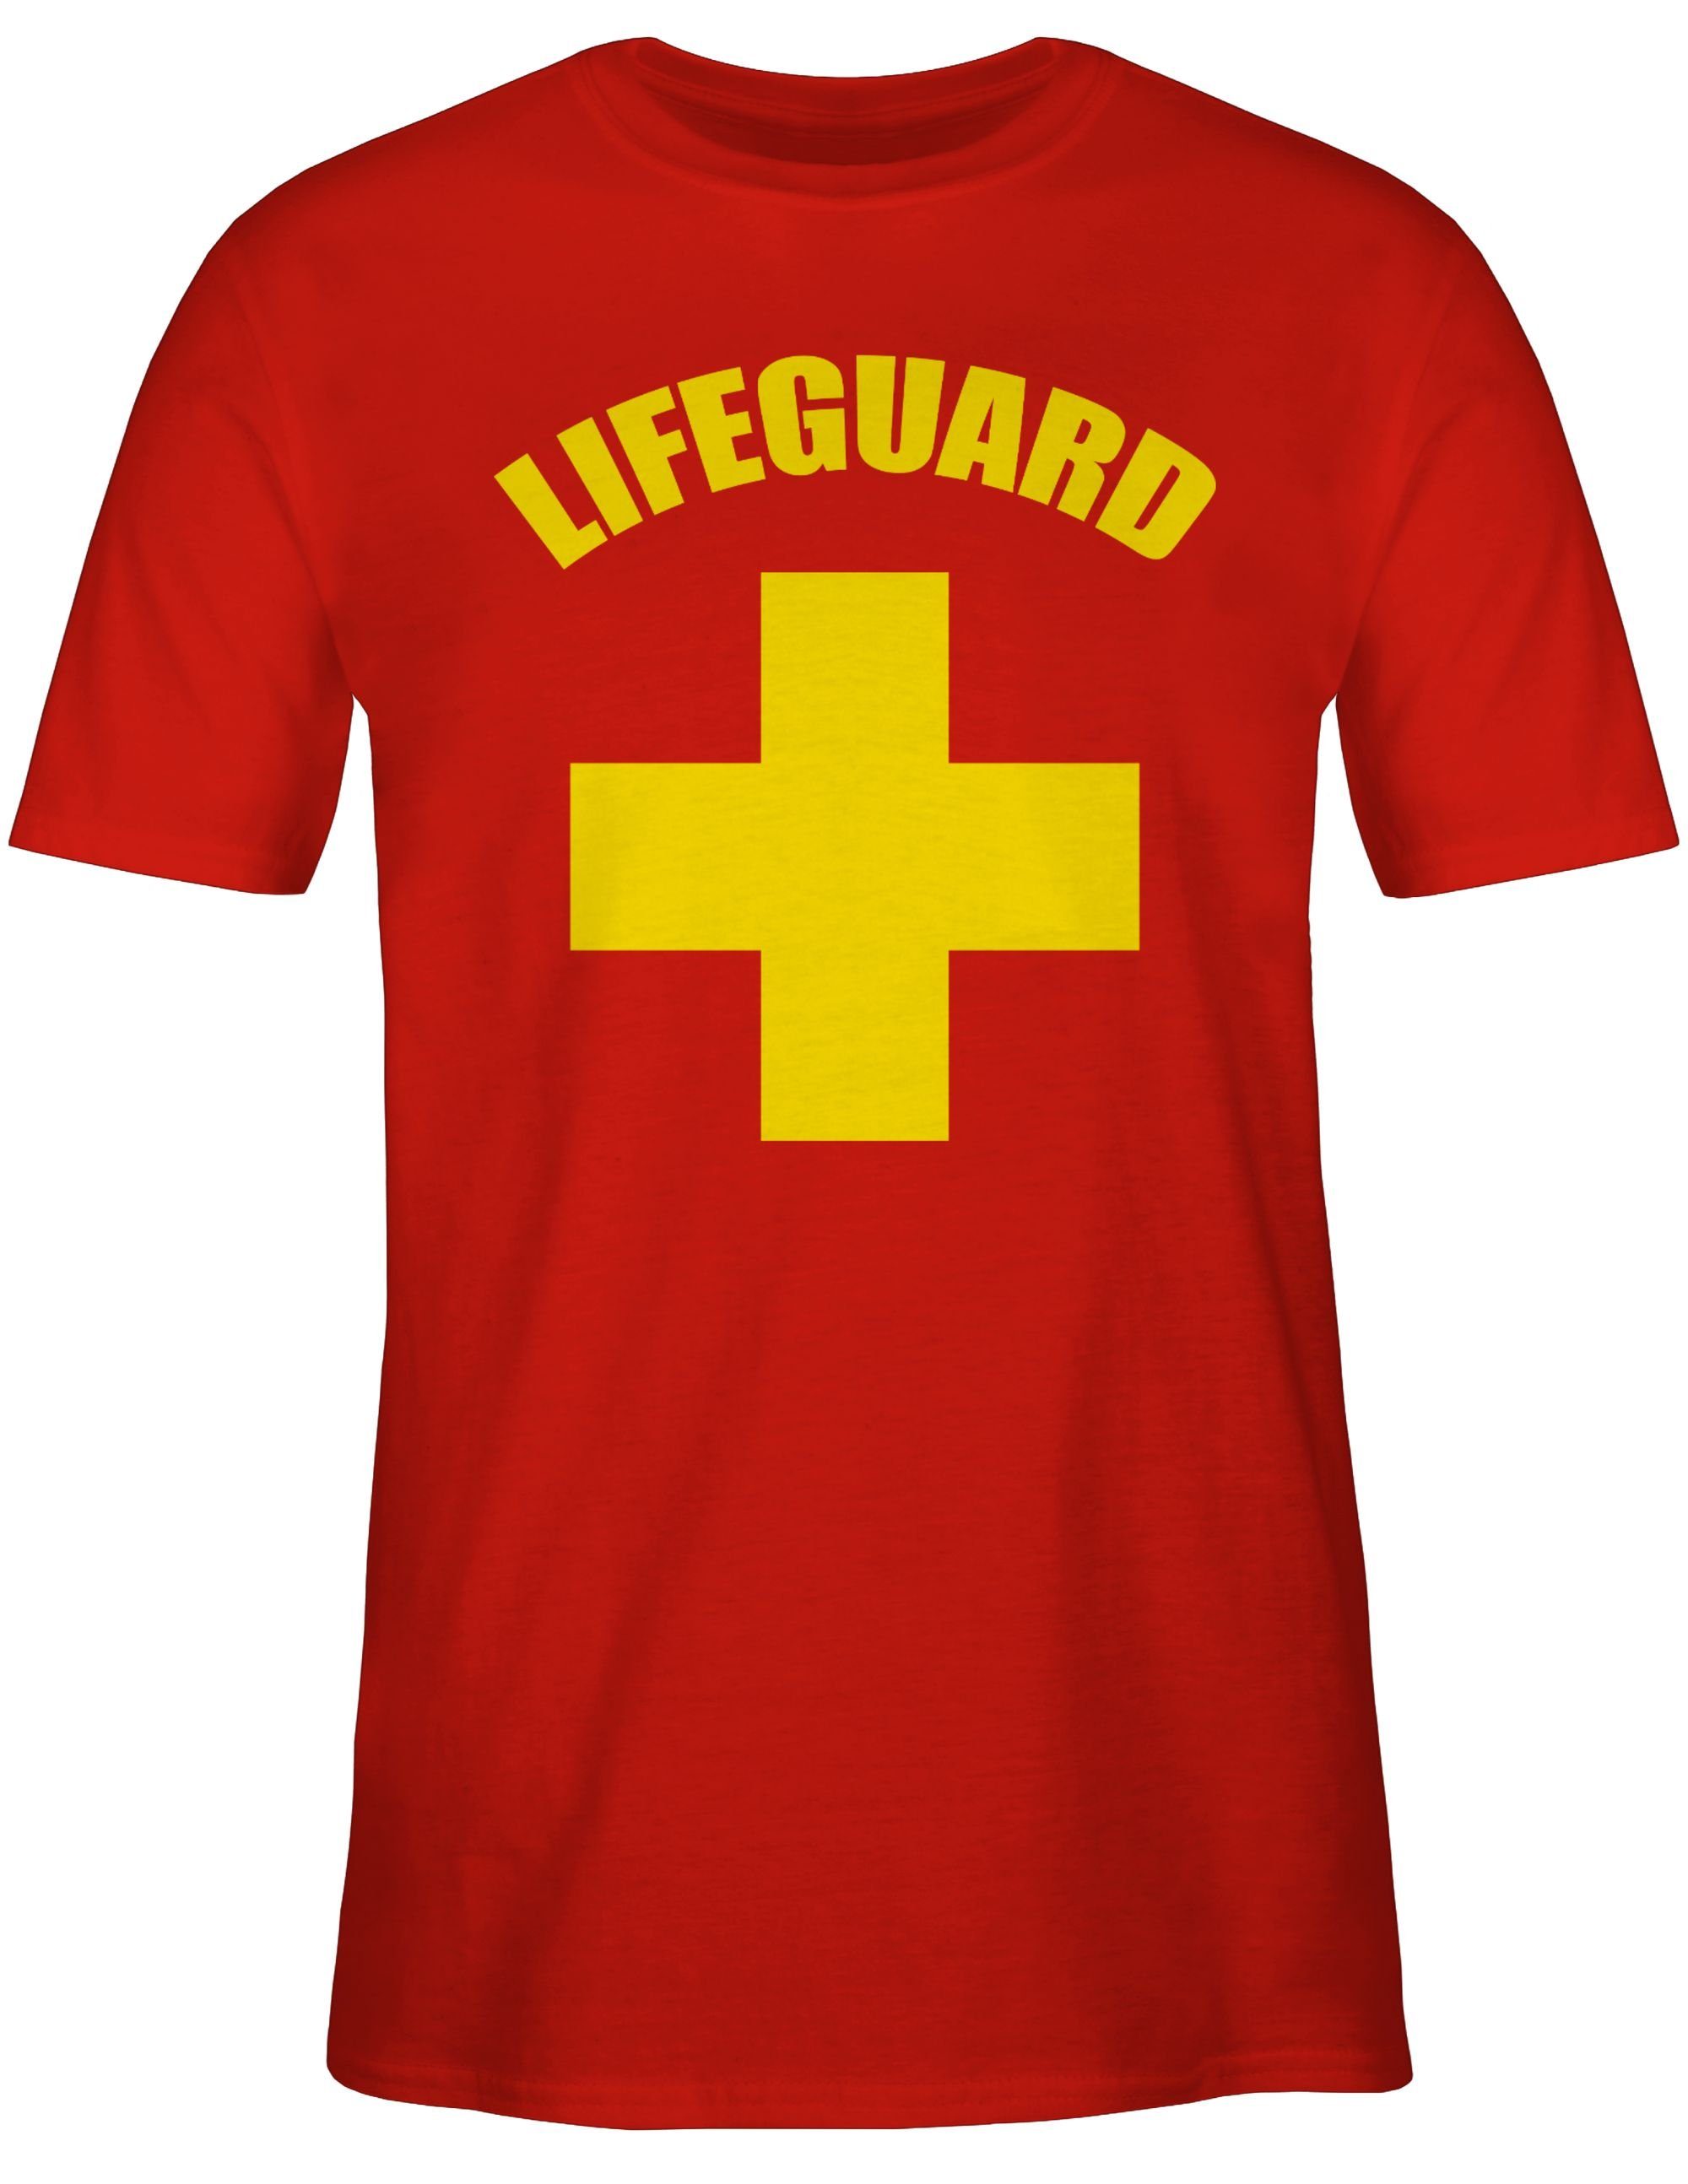 Shirtracer Rettungsschwimmer Outfit T-Shirt Rot Karneval Lifeguard Wasserrettung Baywatch 1